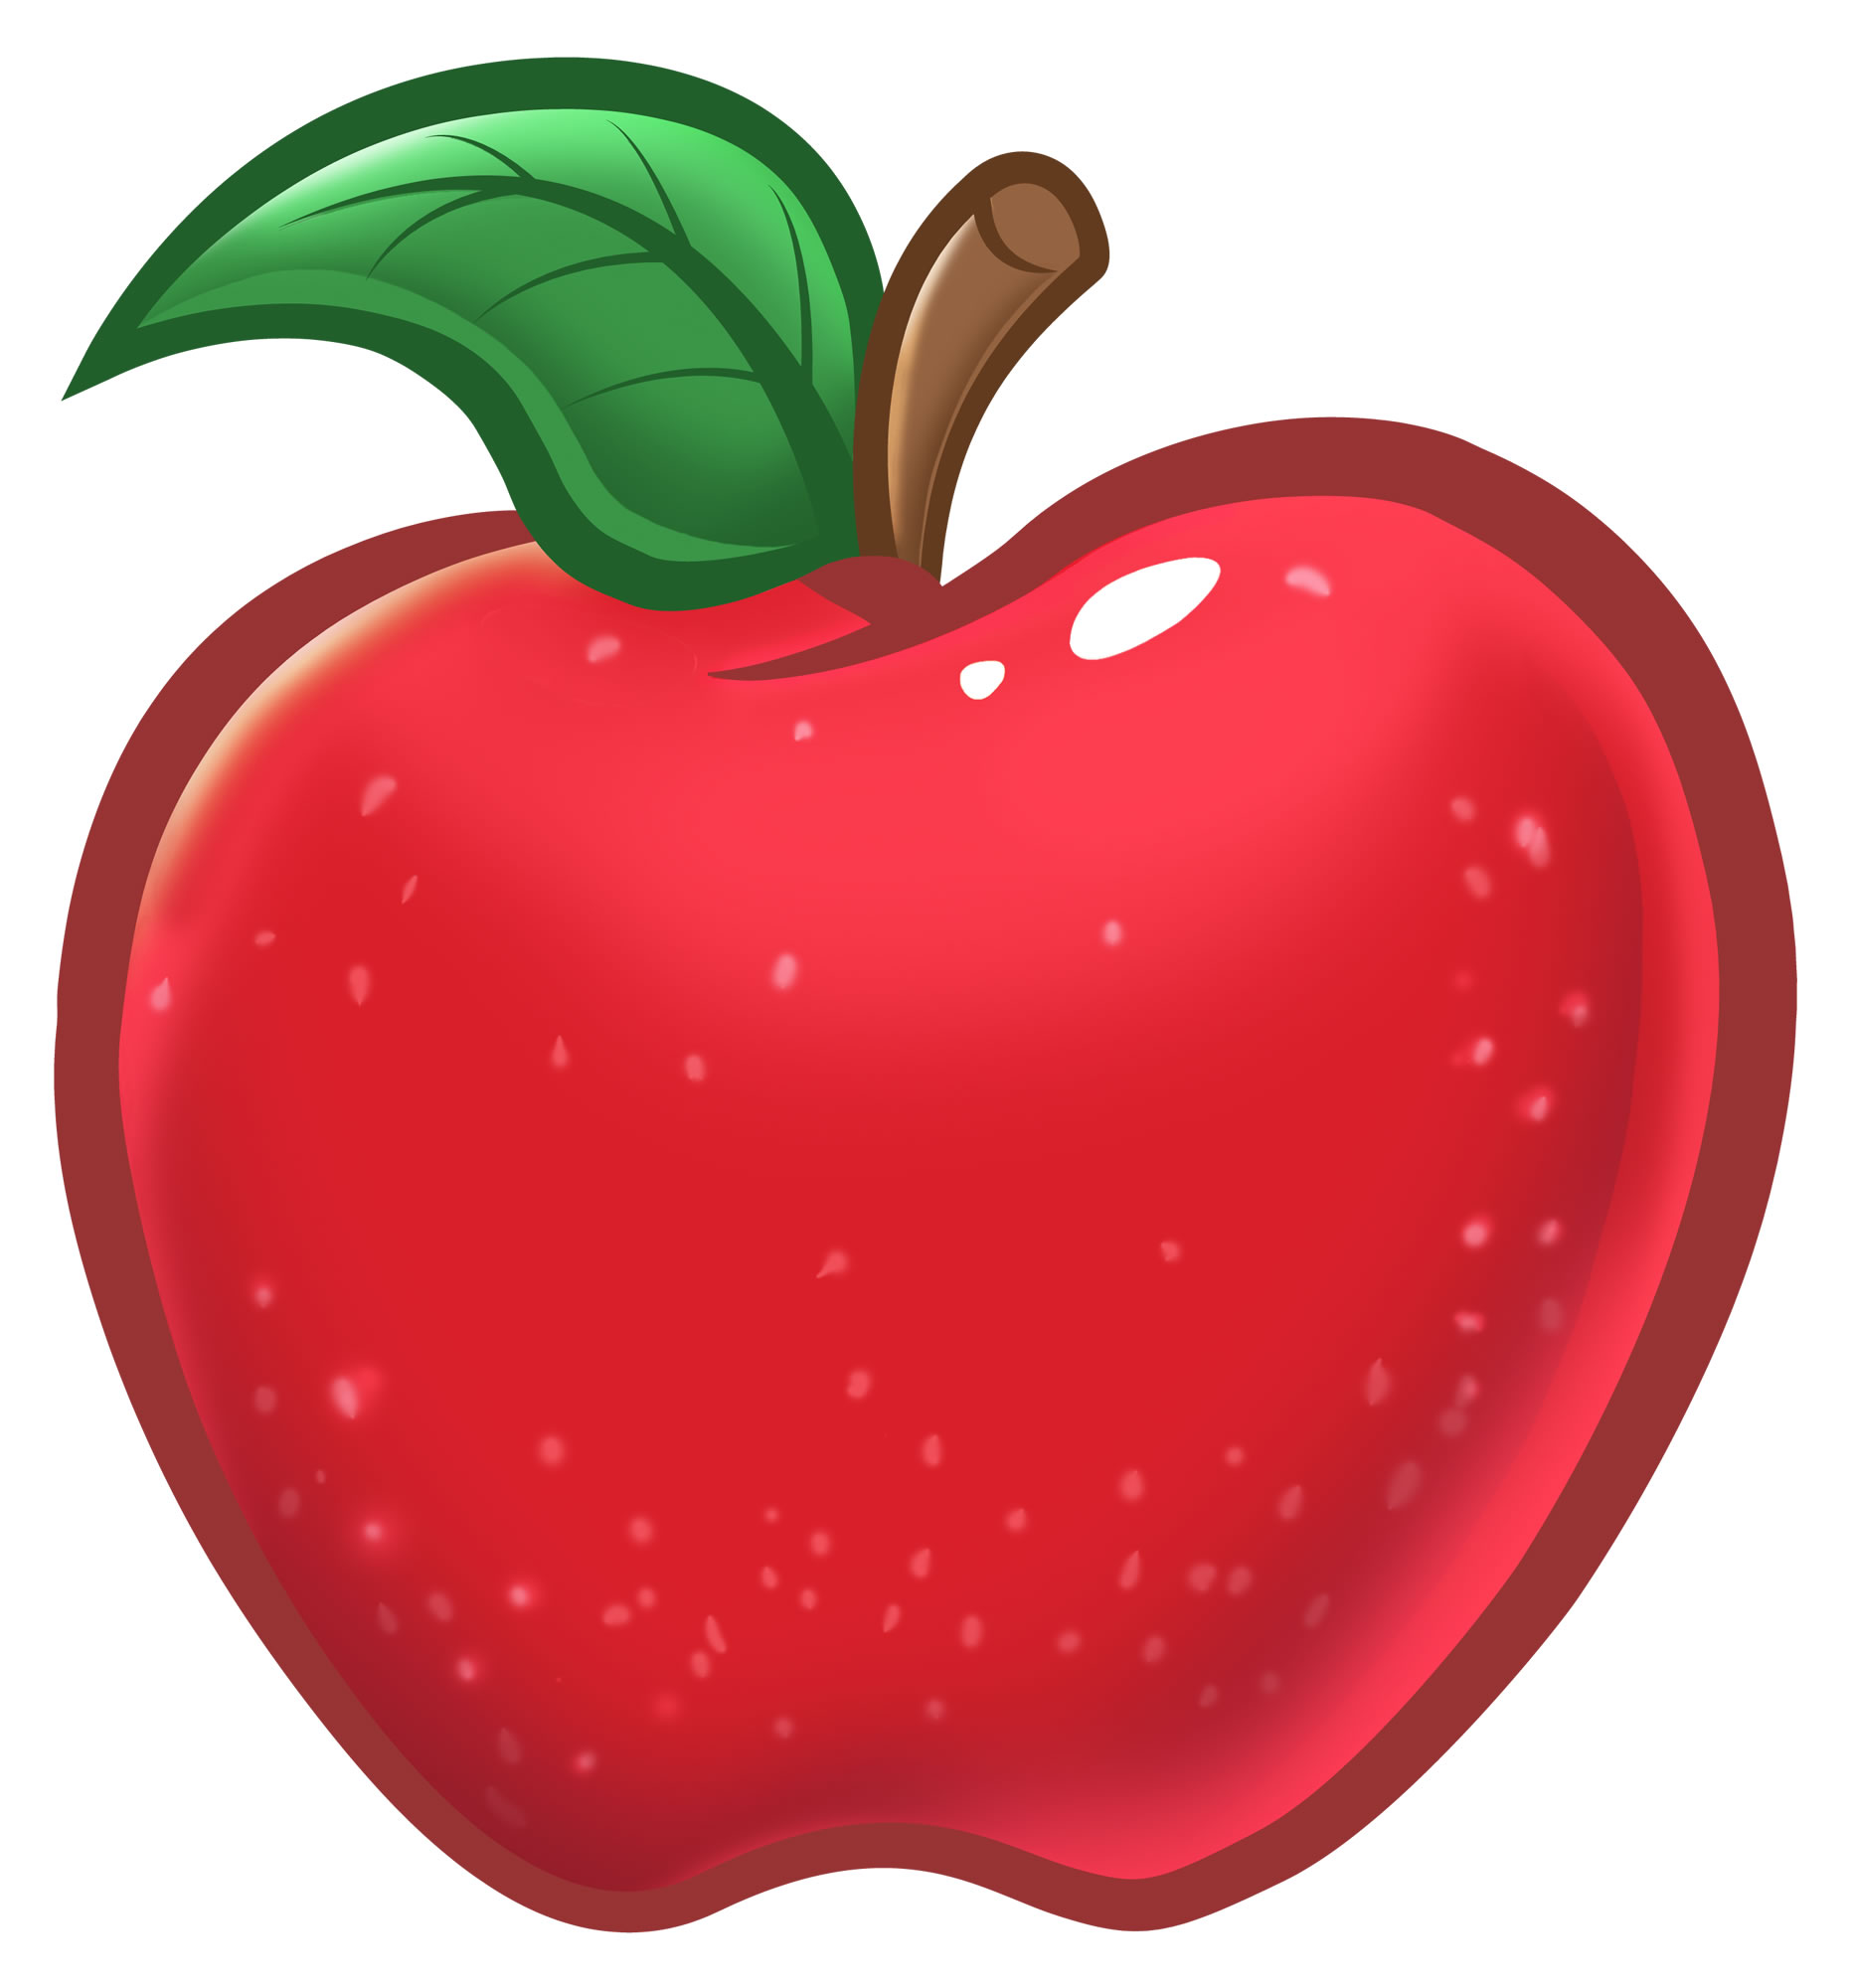 Яблочко картинка для детей